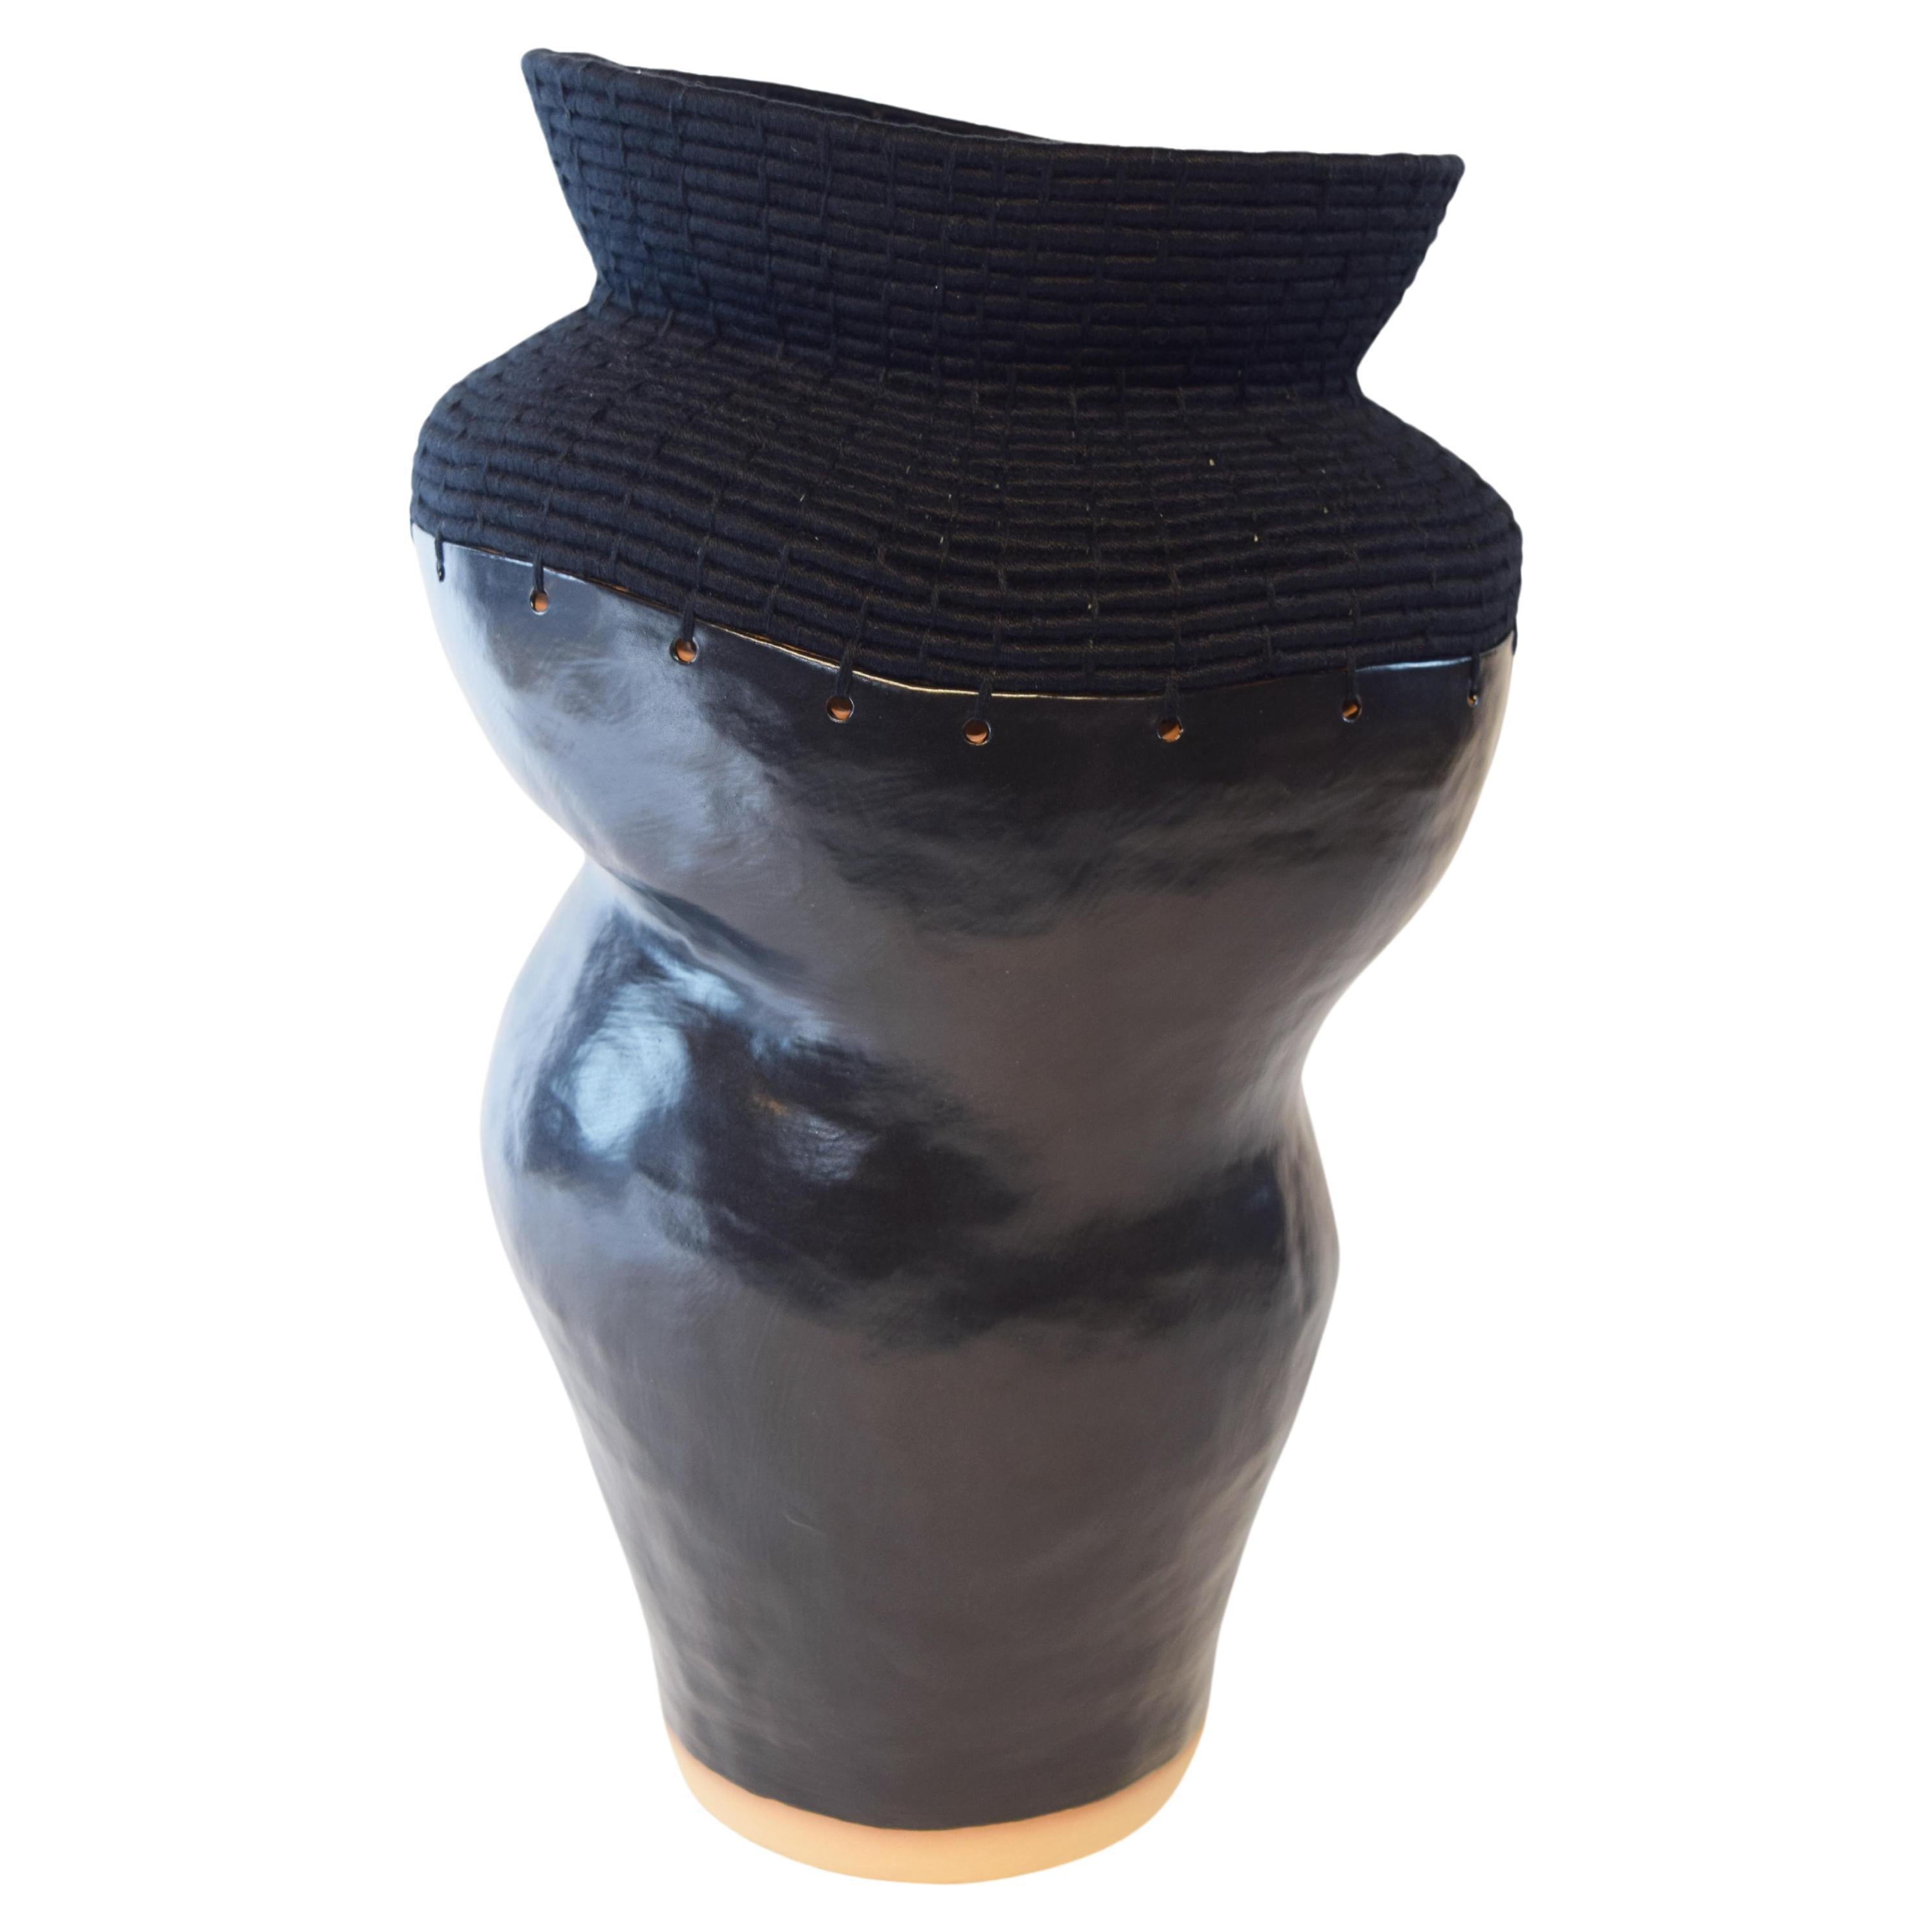 Einzigartiges Keramik- und gewebtes Fasergefäß #762, schwarze satinierte Glasur, schwarze Baumwolle, schwarze Baumwolle im Angebot